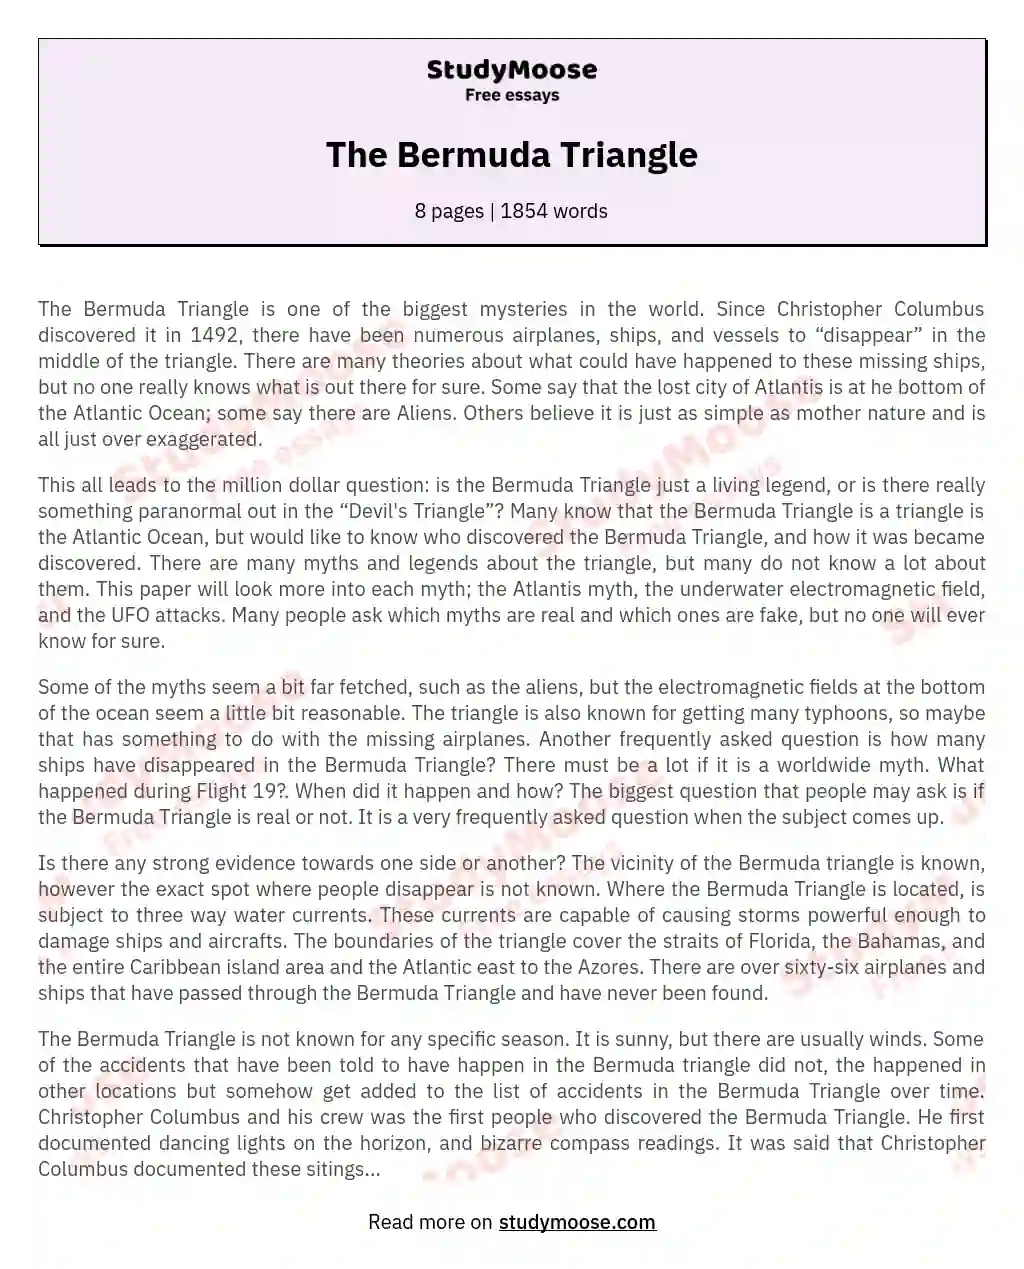 The Bermuda Triangle essay